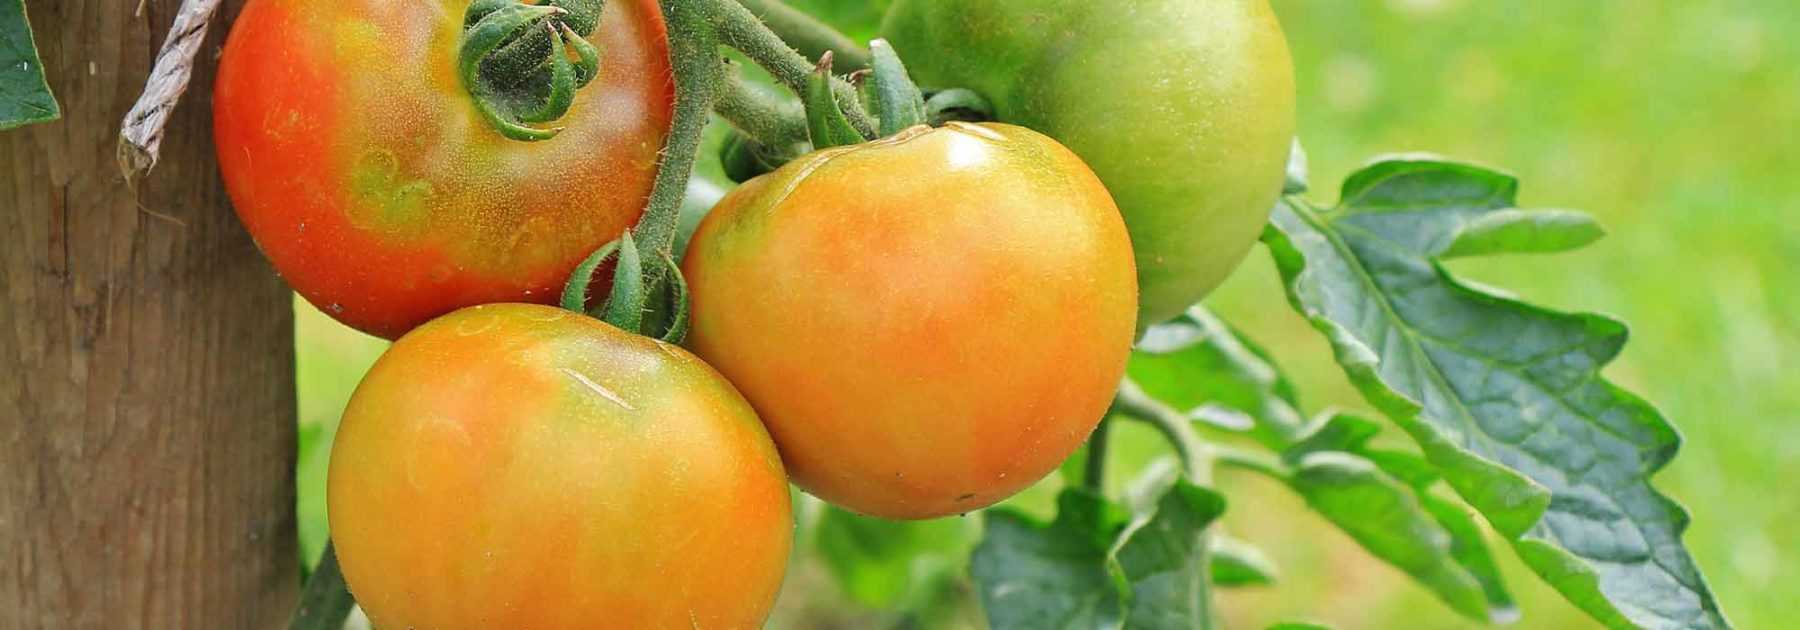 La tomate : fruit et légume de saison